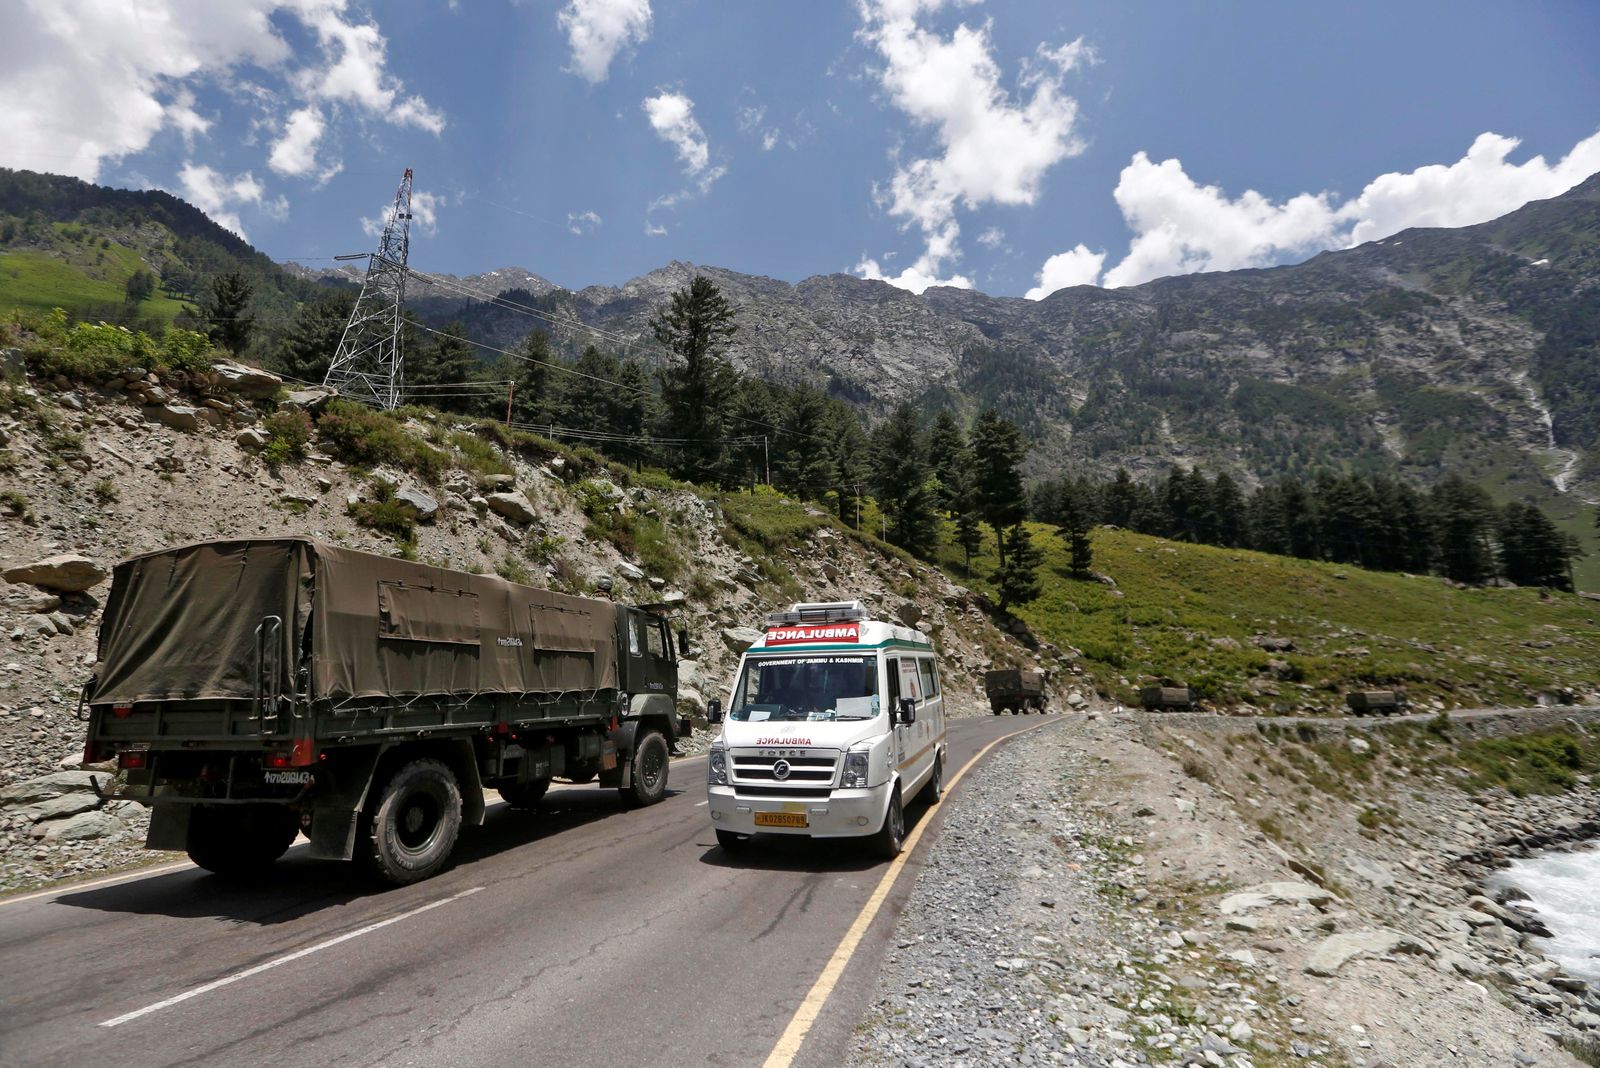 سيارة إسعاف تمرّ قرب قافلة للجيش الهندي على طريق يؤدي إلى منطقة لاداخ - 18 يونيو 2020 - REUTERS